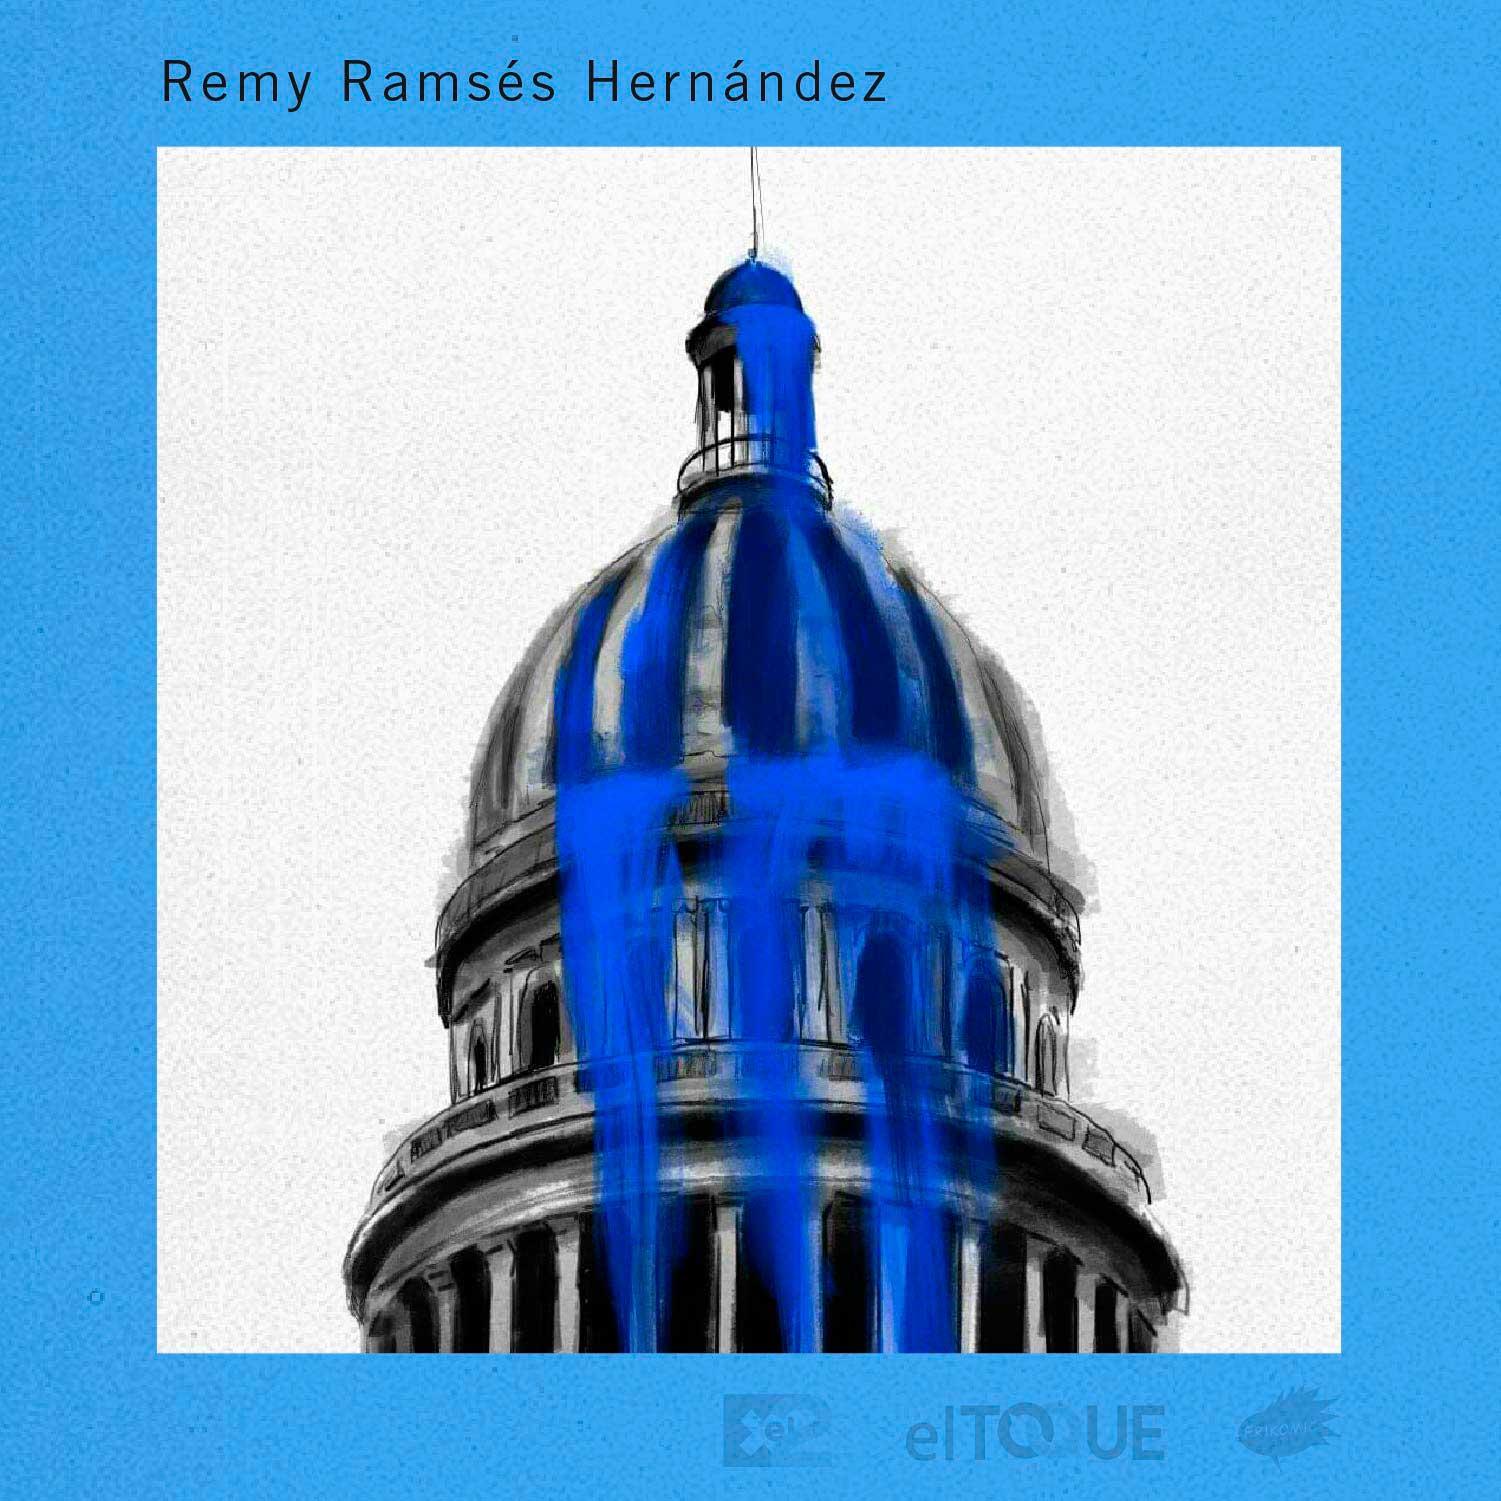 21-02-28-Hernandez-Remy-AZUL-REPUDIO-ACTOS-DE-REPUDIO-CUBA.jpg